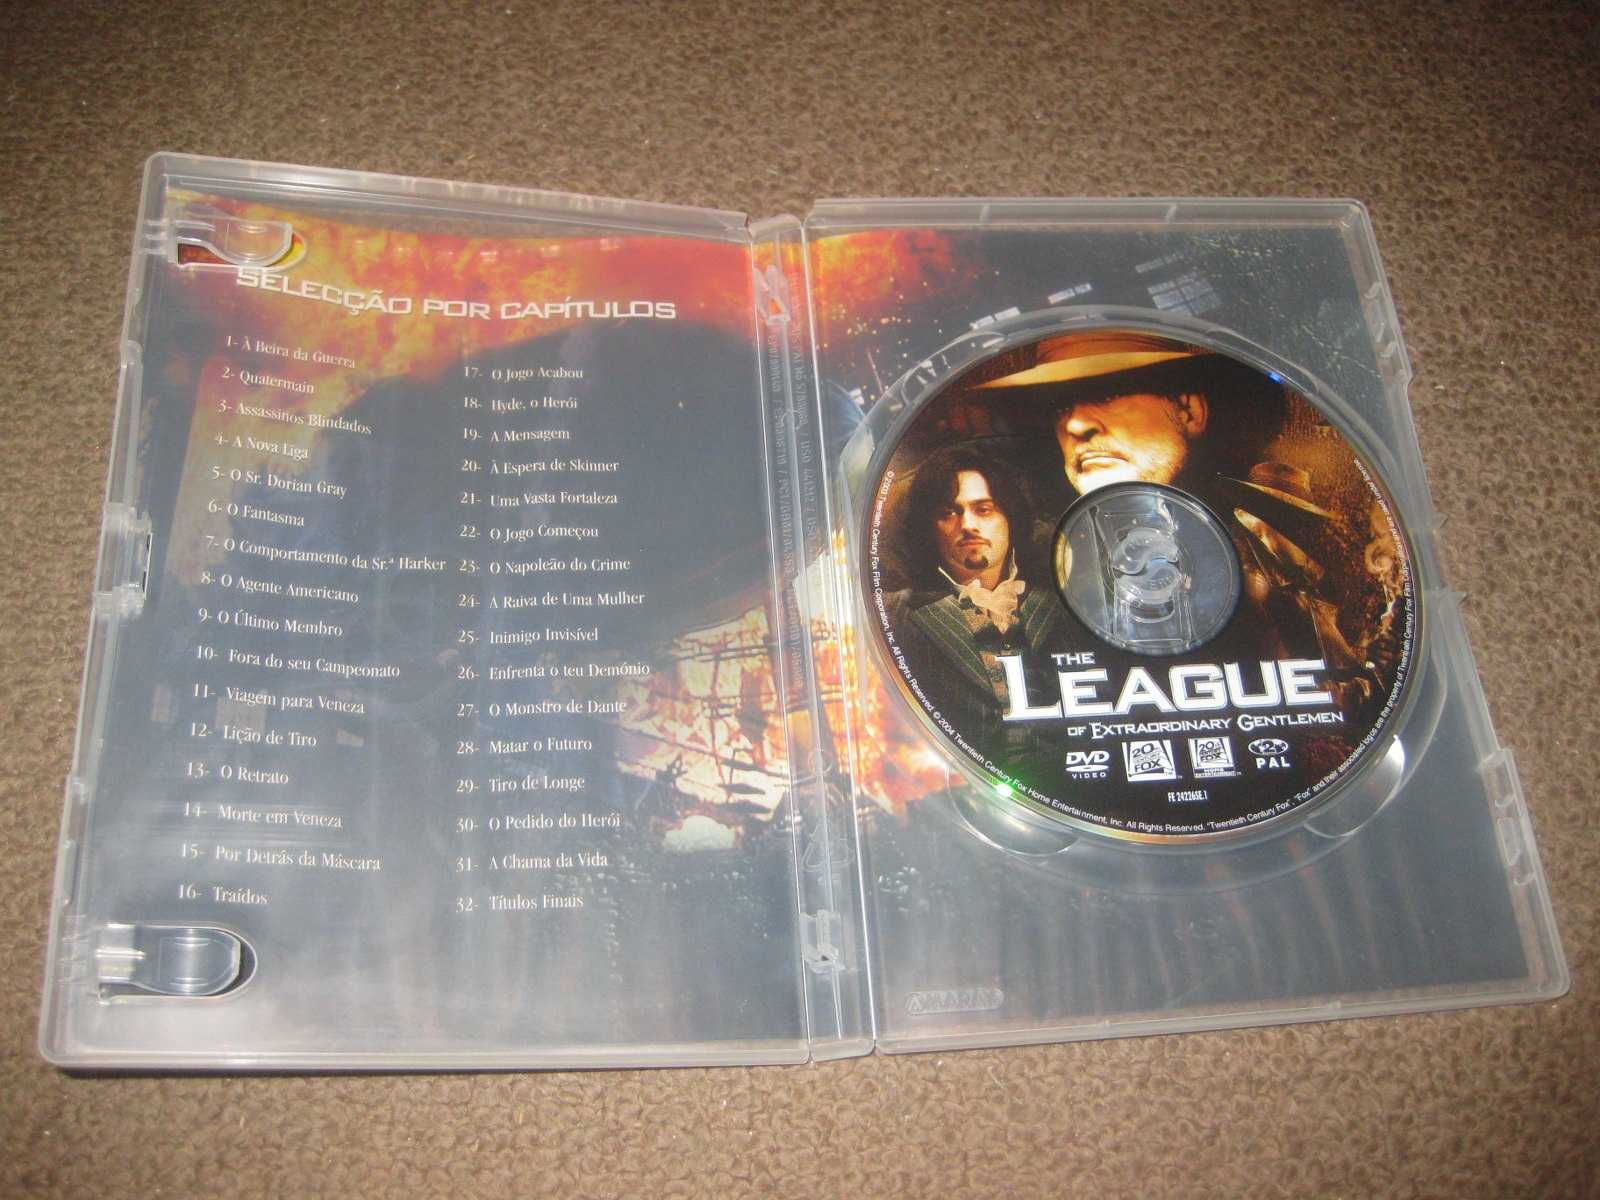 DVD "Liga de Cavalheiros Extraordinários" com Sean Connery